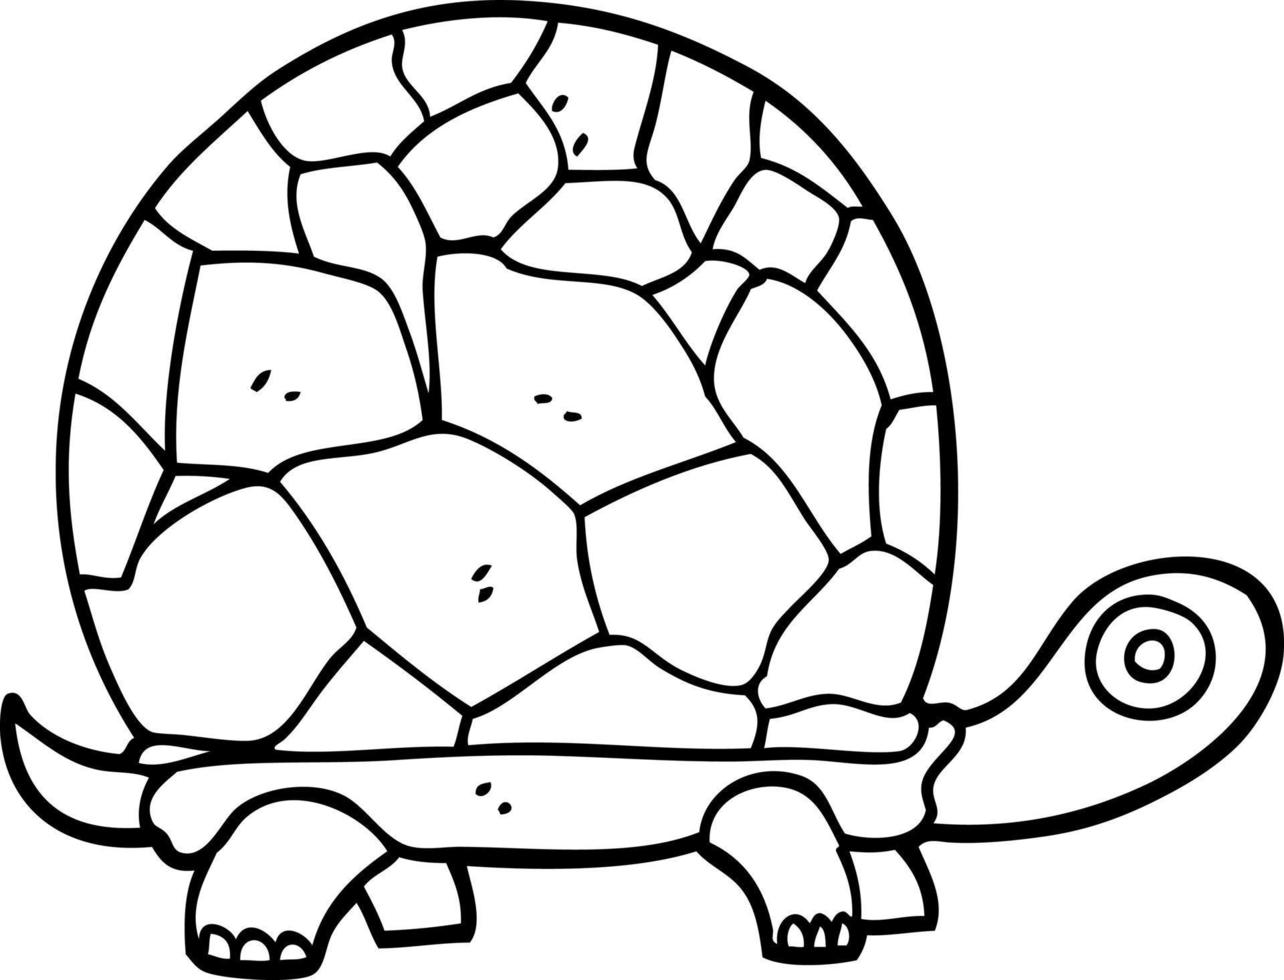 tartaruga de desenho animado preto e branco vetor